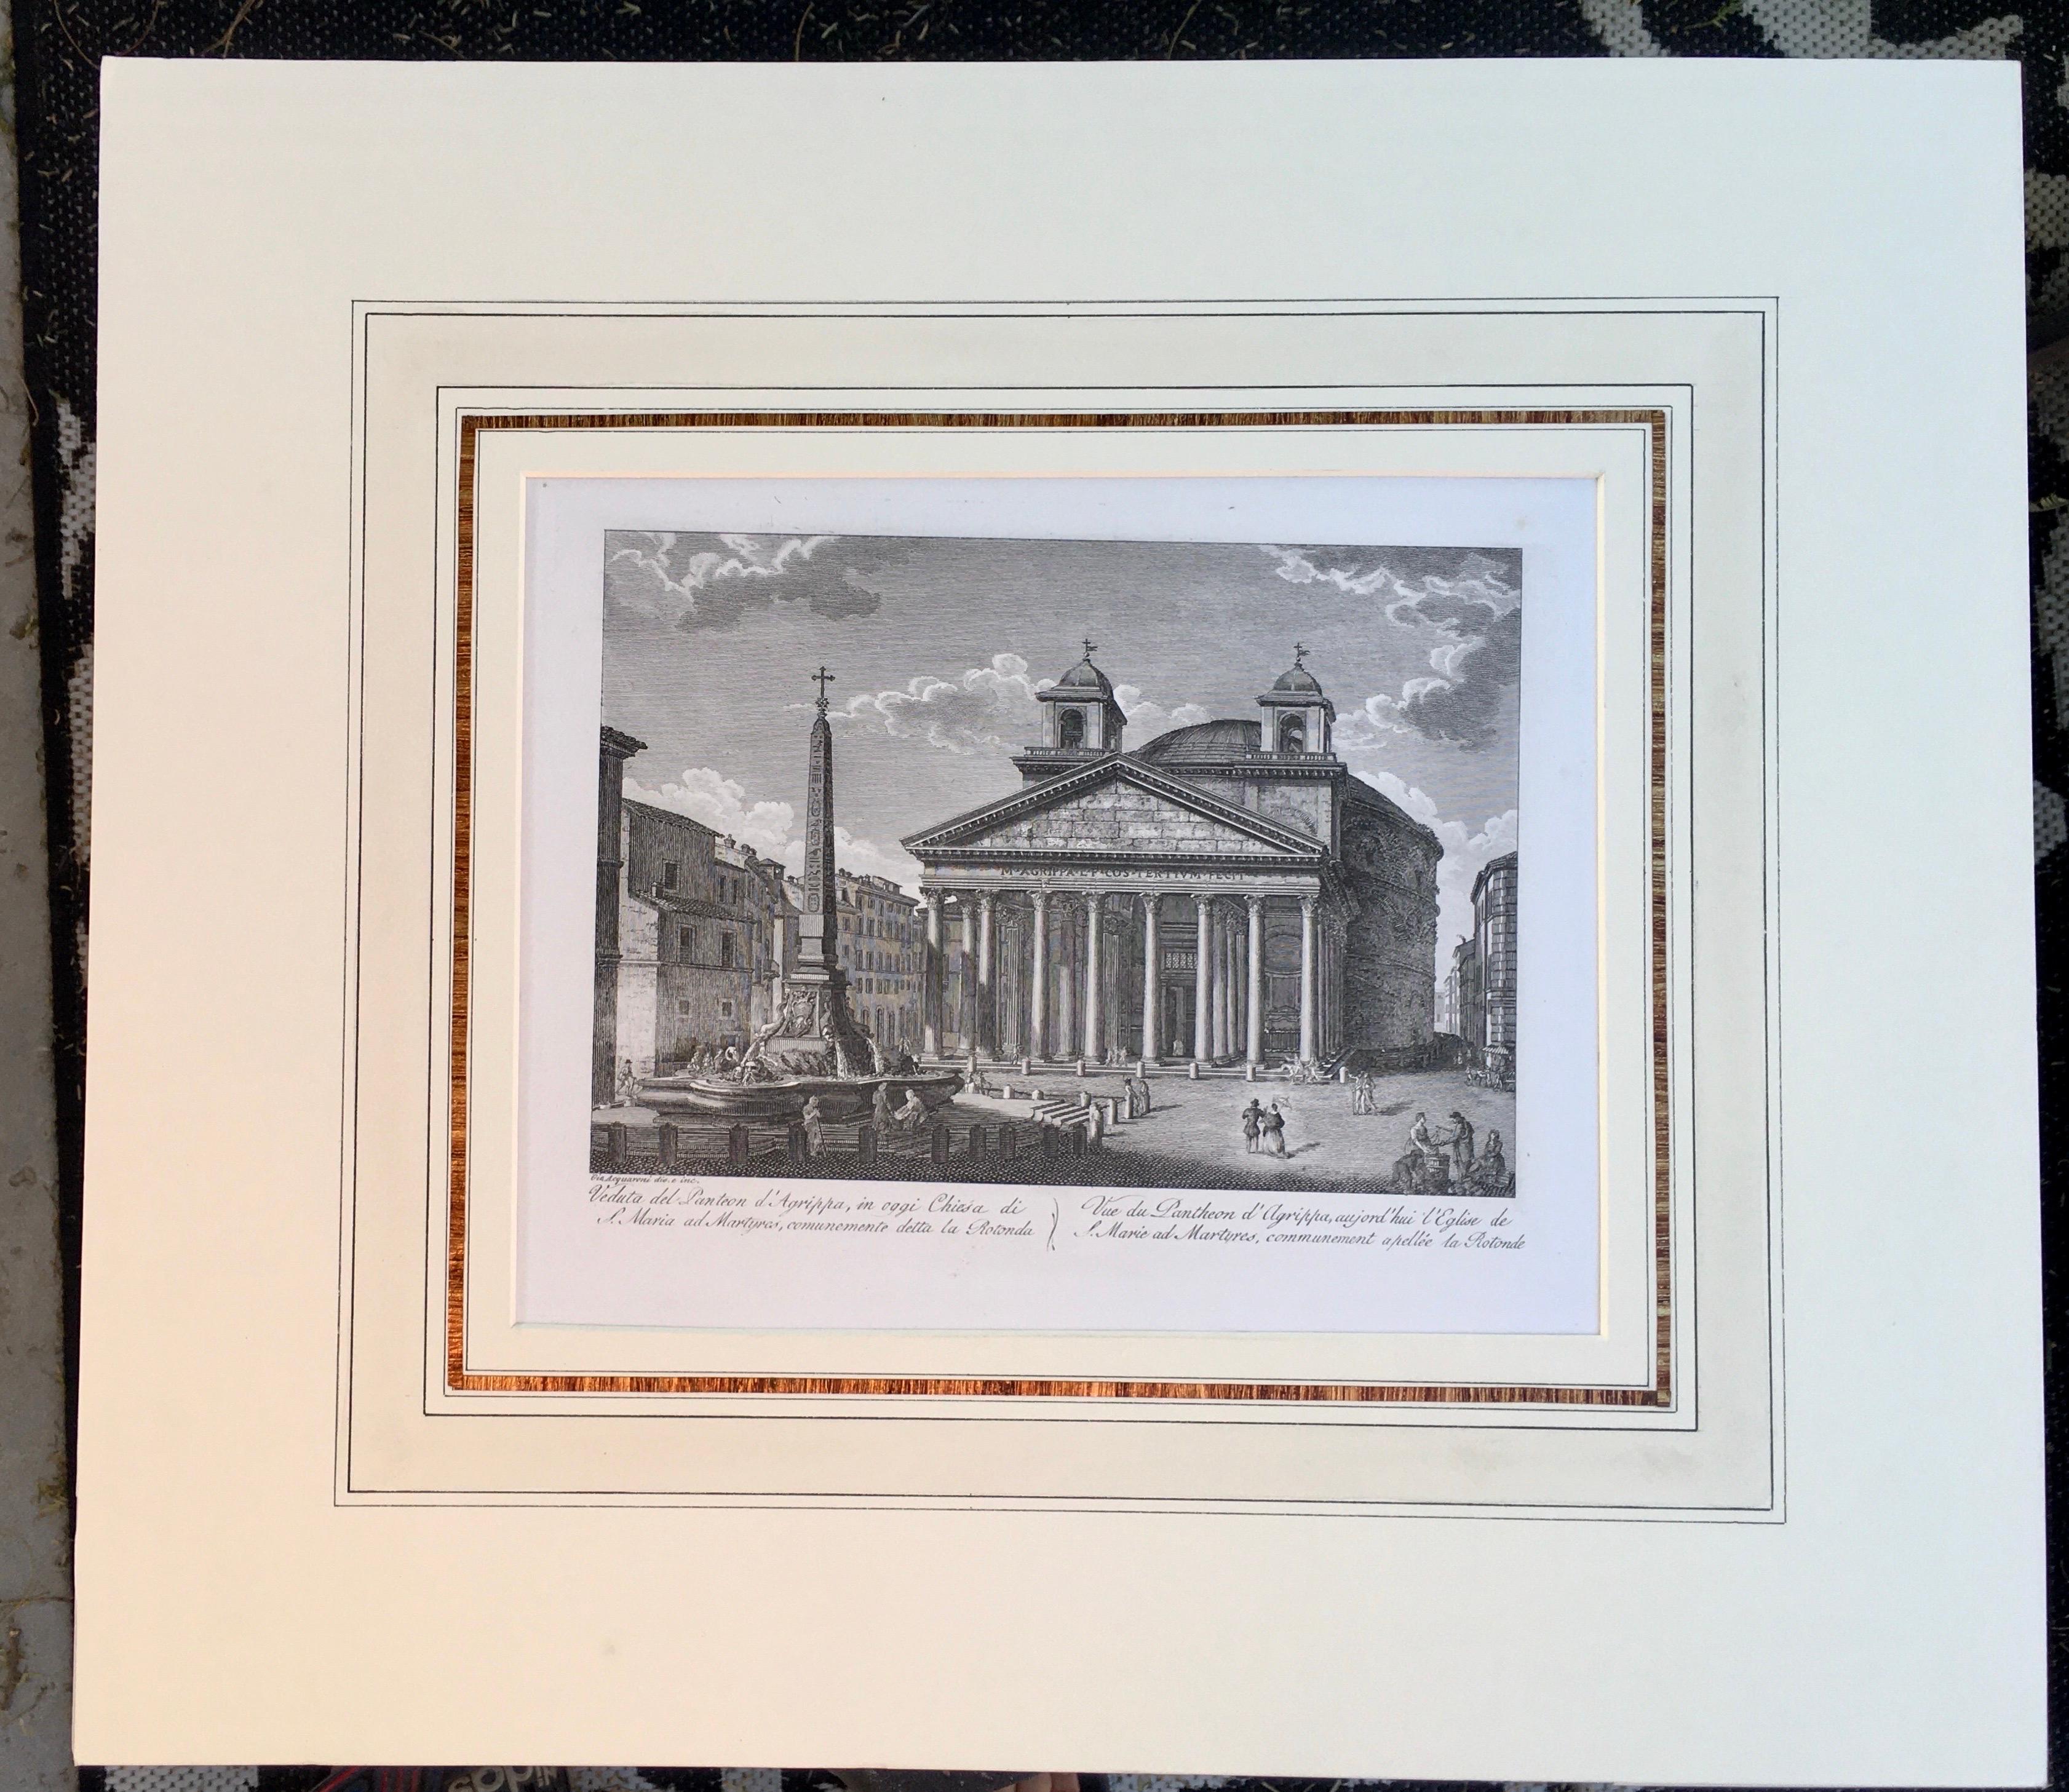 Une paire de rares et très belles gravures de la ville de Rome, imprimées en 1816. Tous deux sont imprimés à partir de plaques de cuivre originales. 
Passe-partout français fait à la main à la manière du XVIIIe siècle avec bandes dorées d'artistes